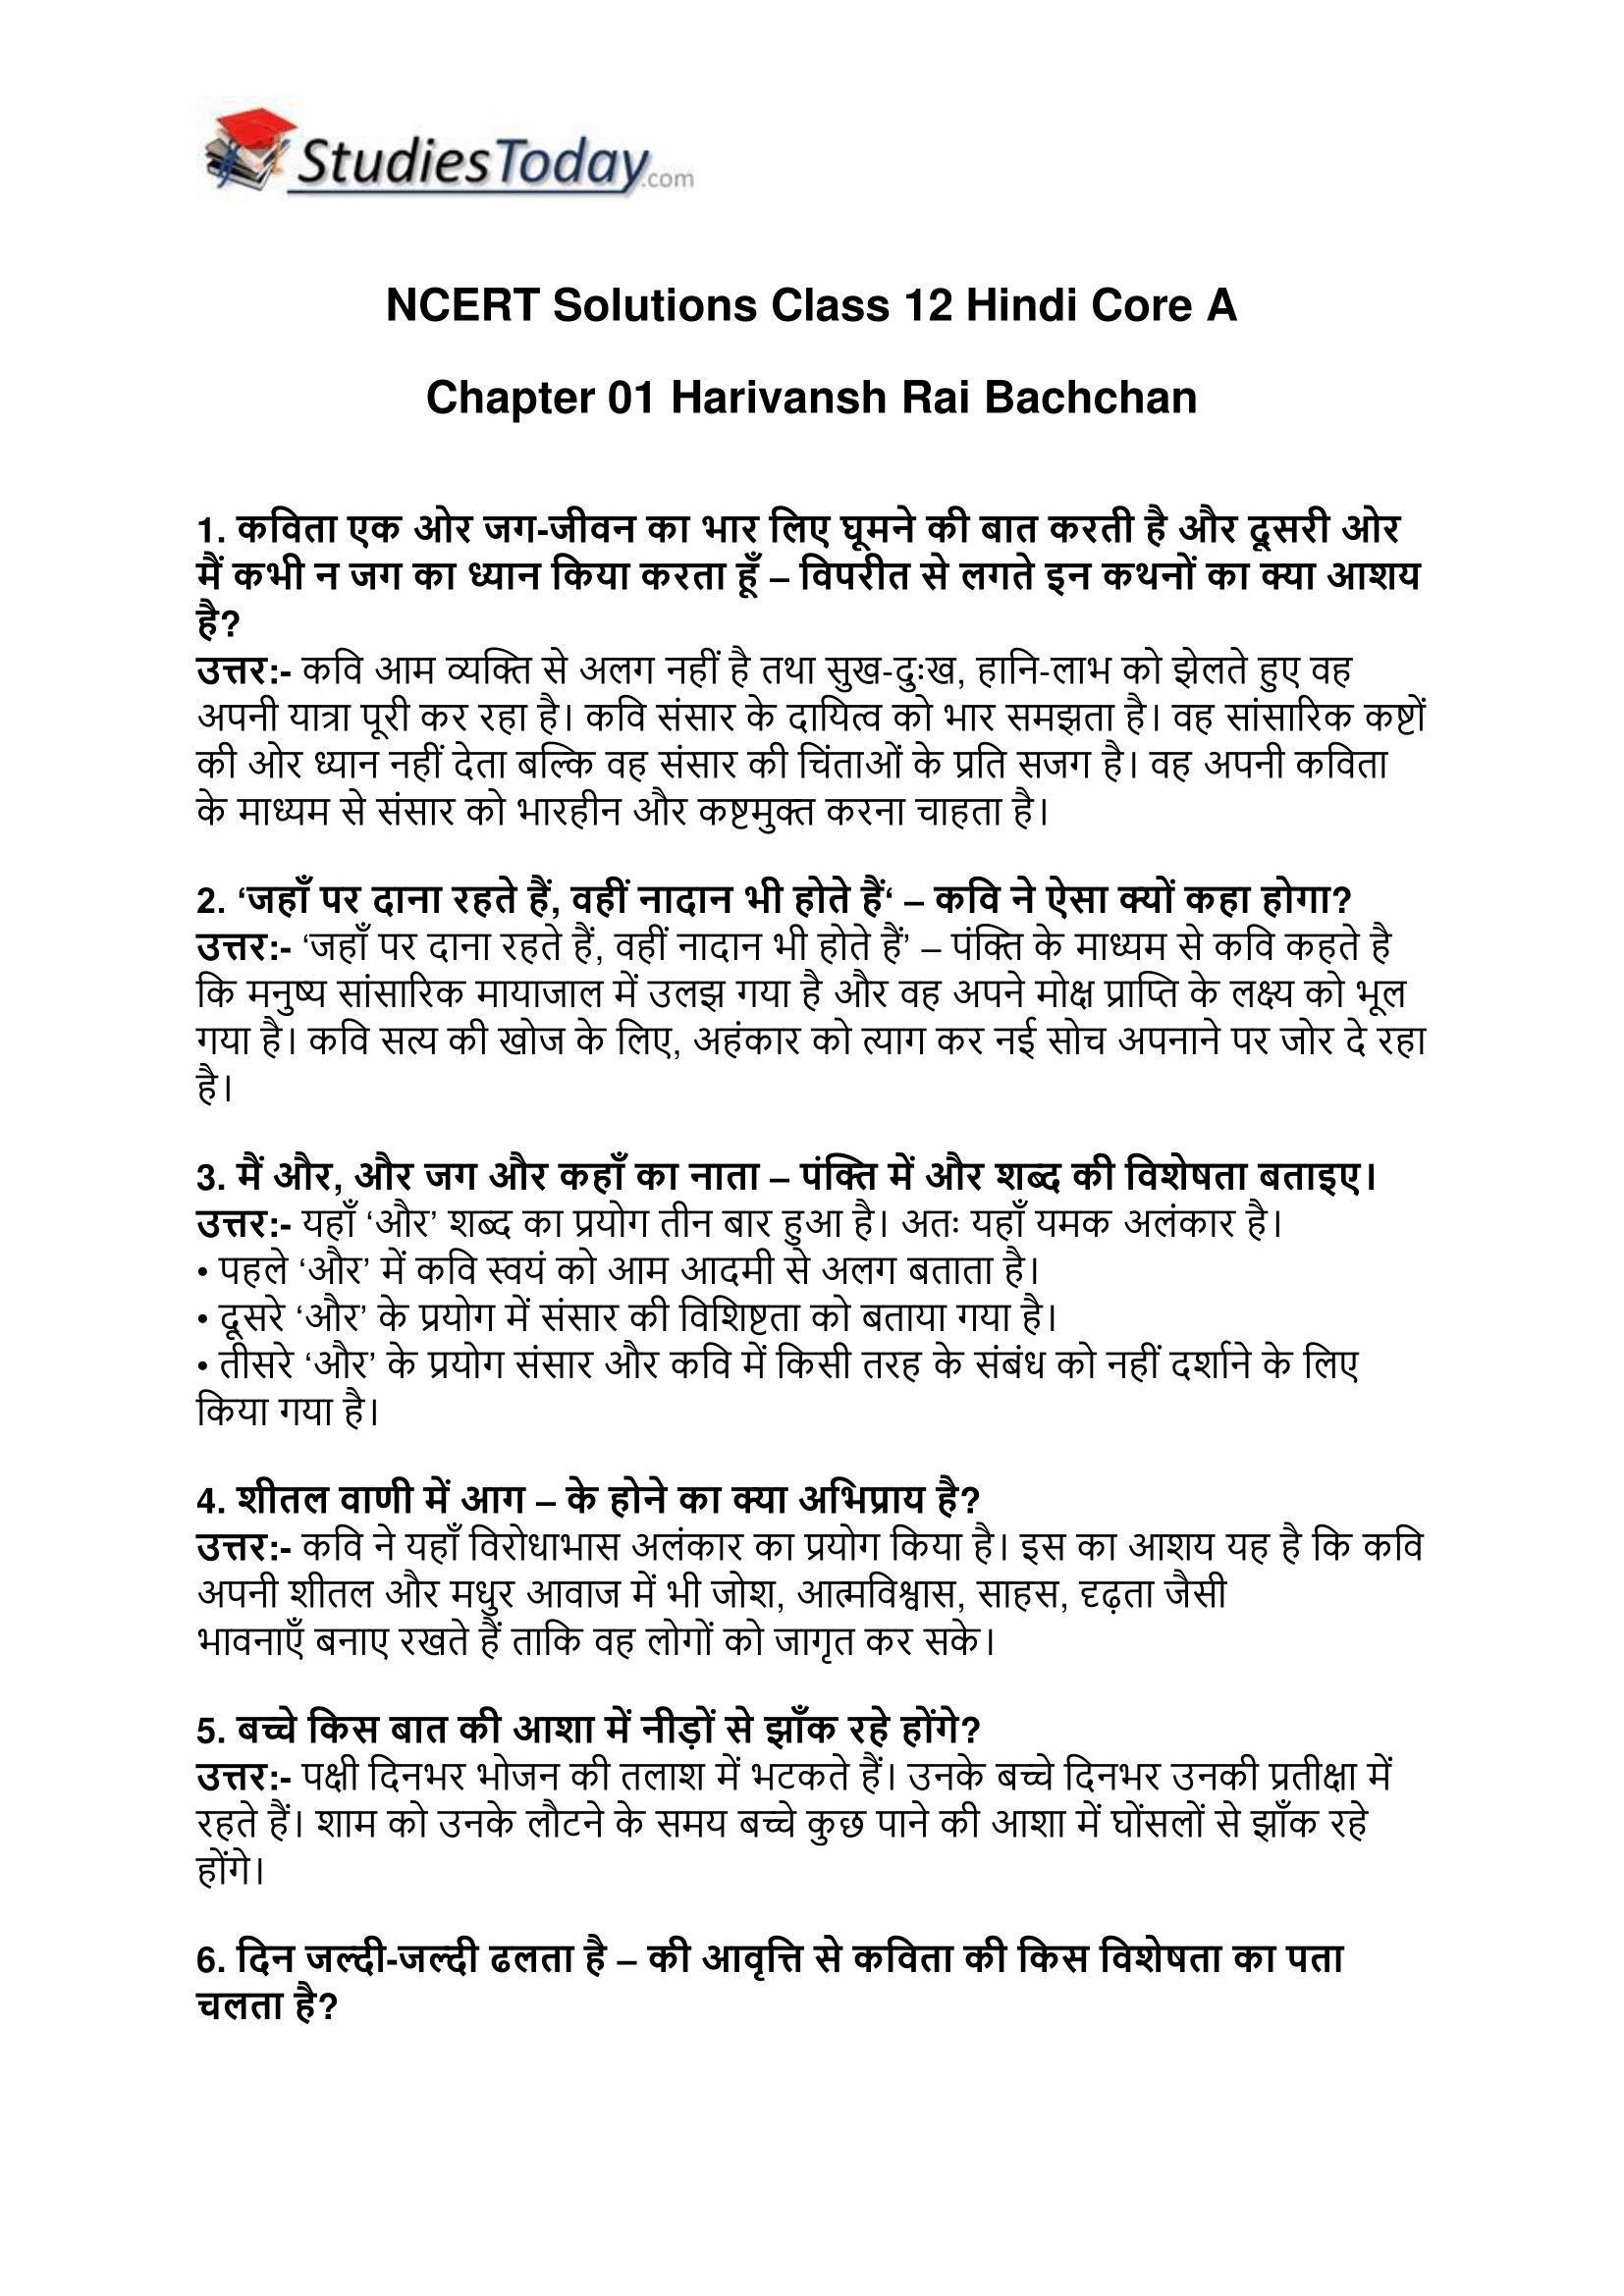 ncert-solutions-class-12-hindi-core-a-chapter-1-harivansh-rai-bachchan-1